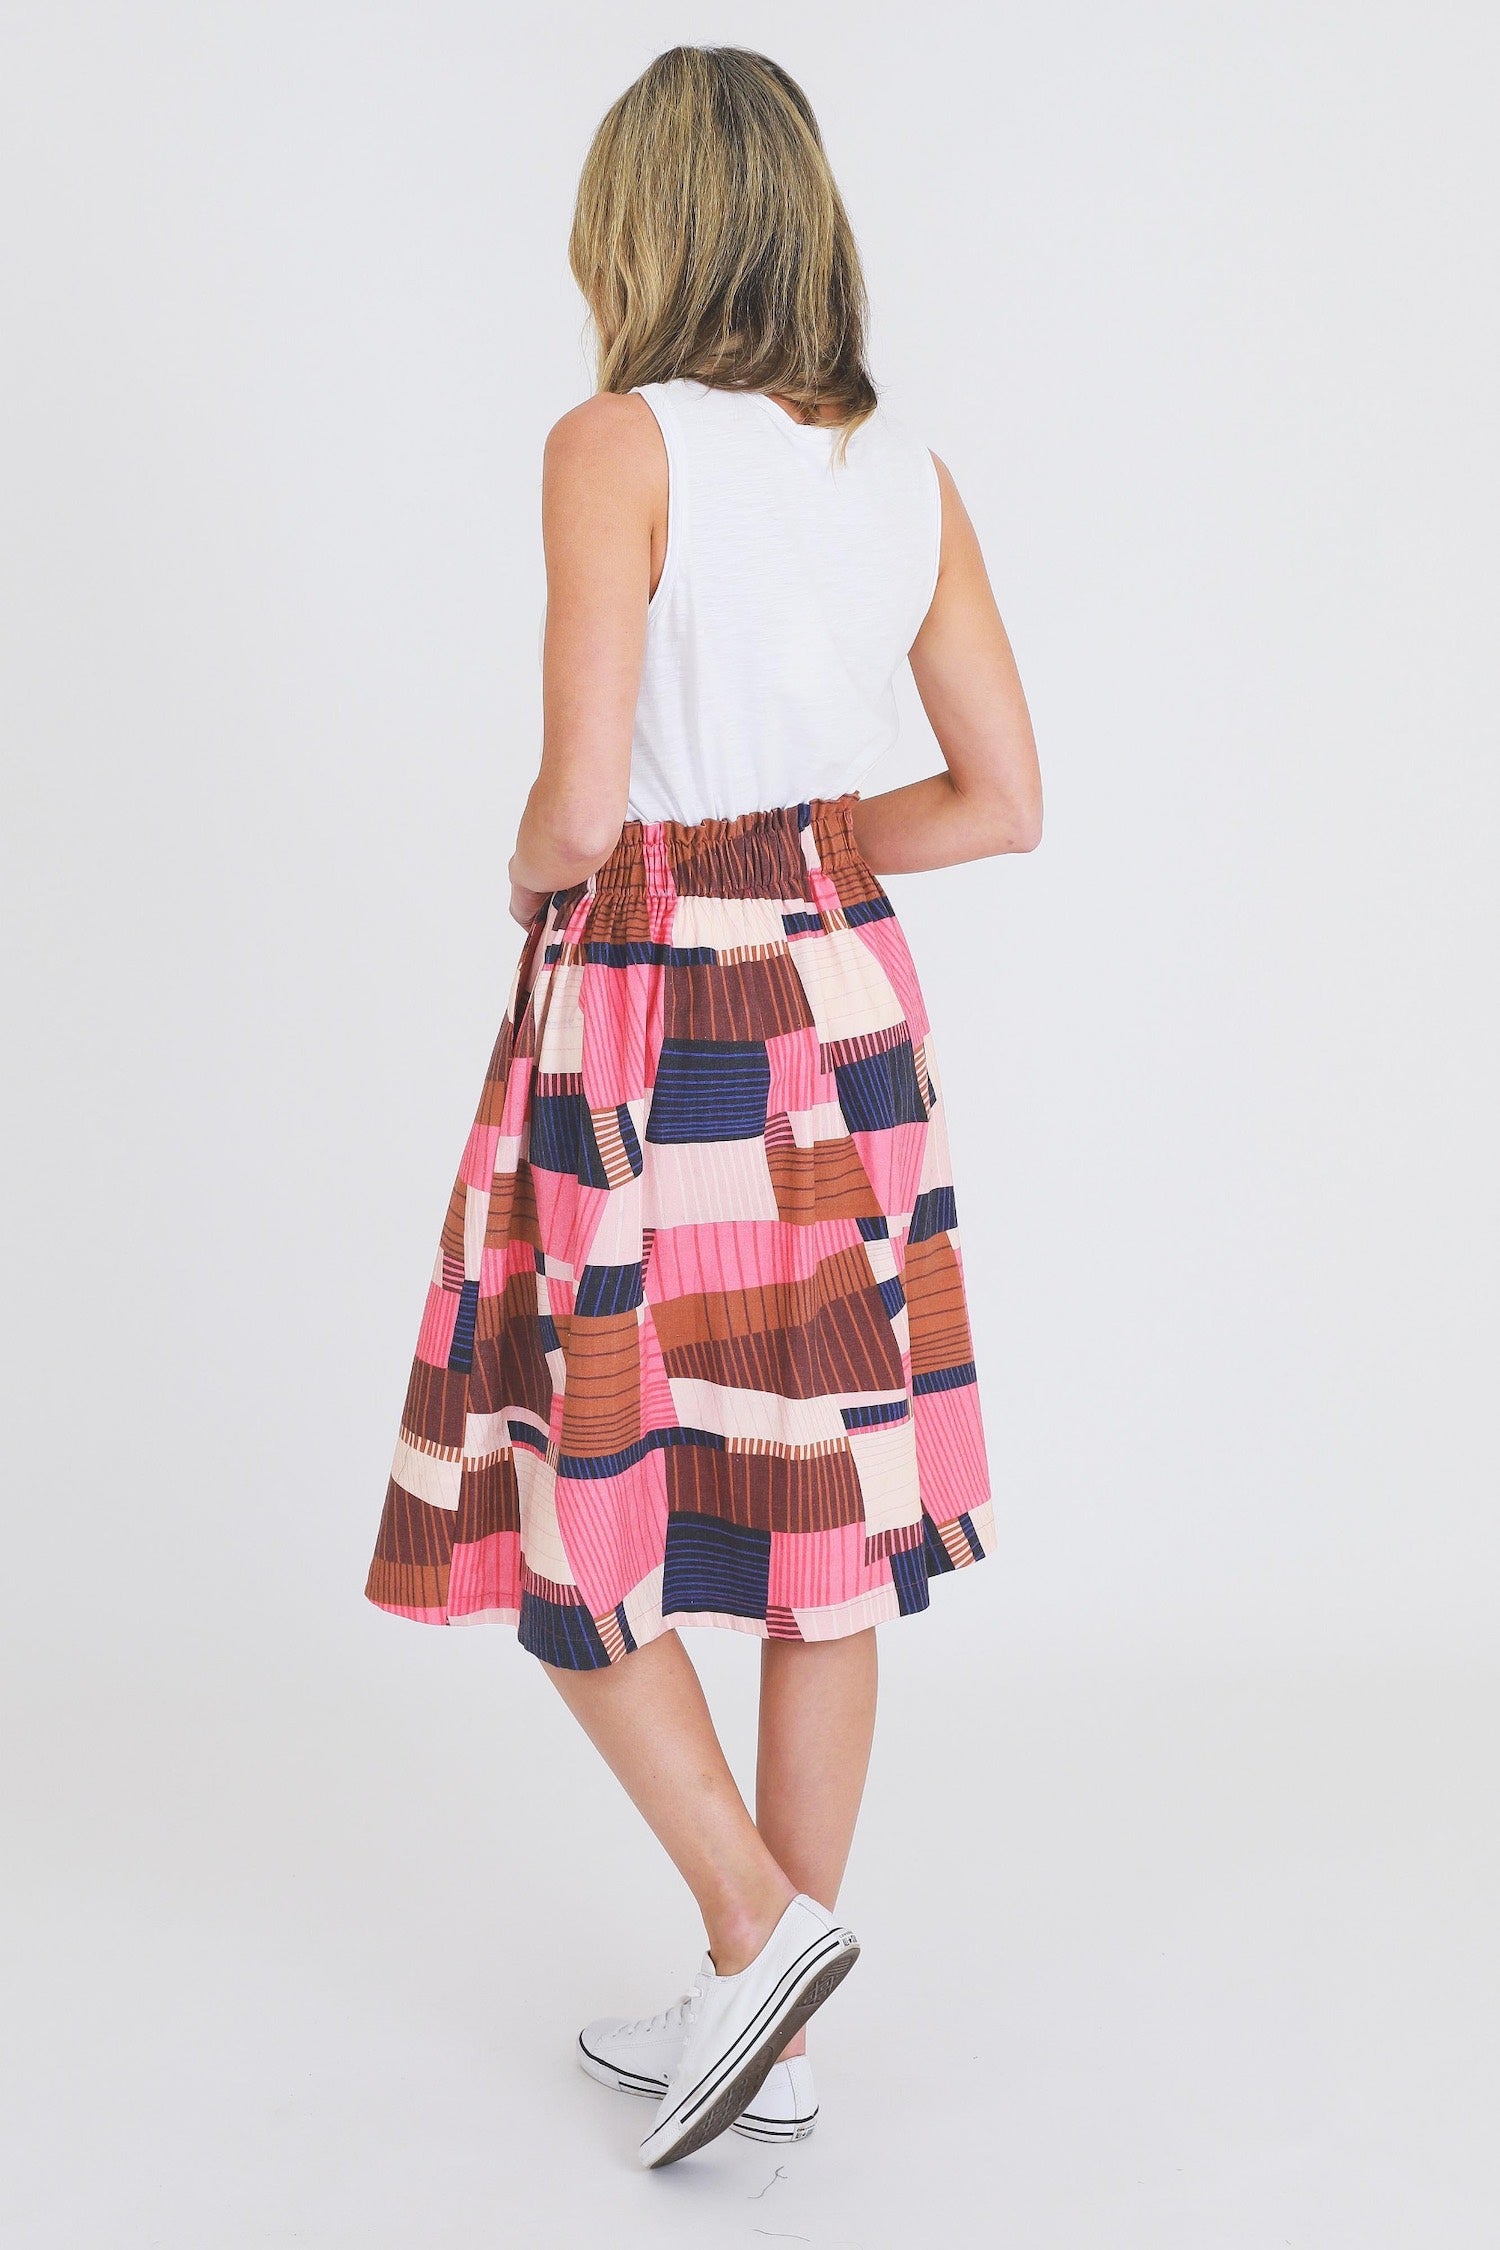 Rosette Geometric Pink Skirt